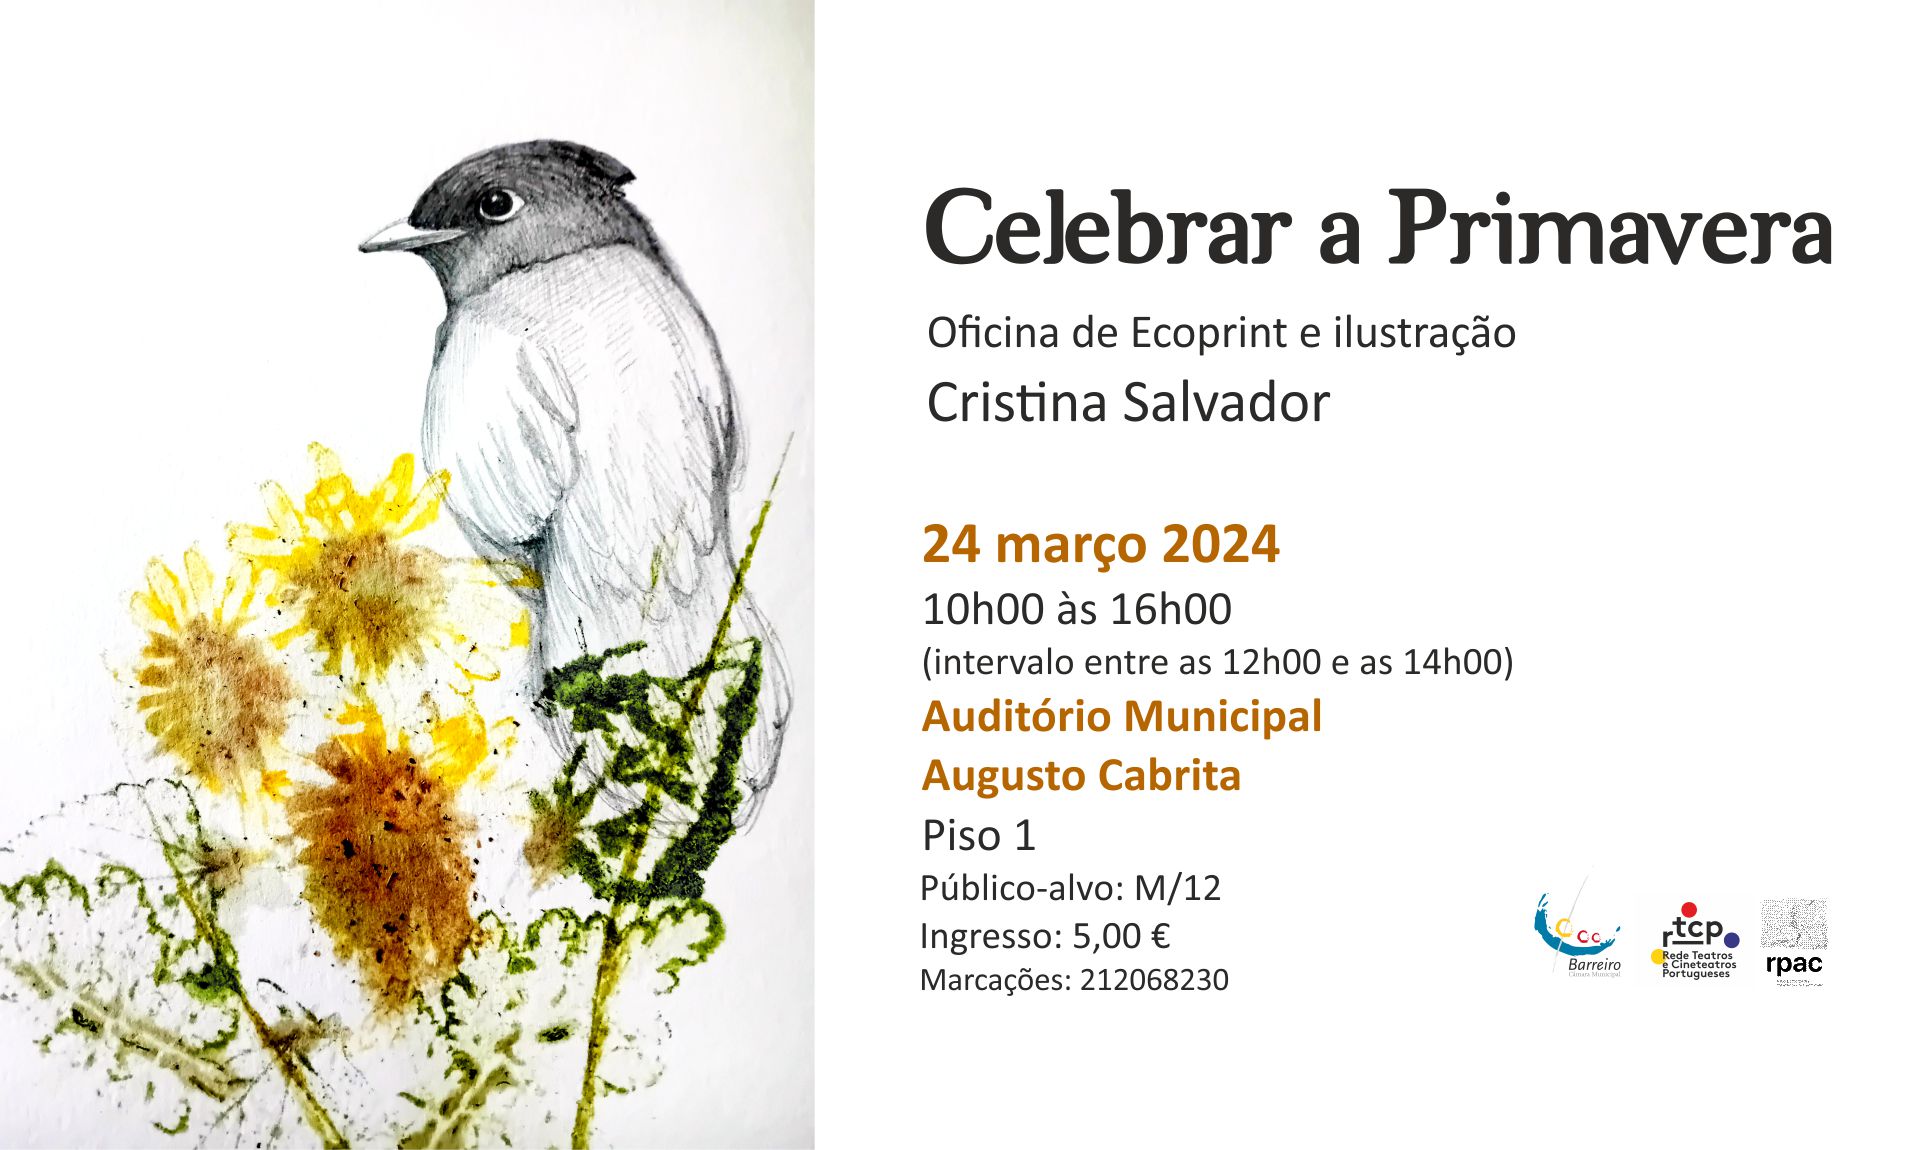 Oficina de Ecoprint e ilustração “Celebrar a Primavera” com Cristina Salvador | 24 março |...